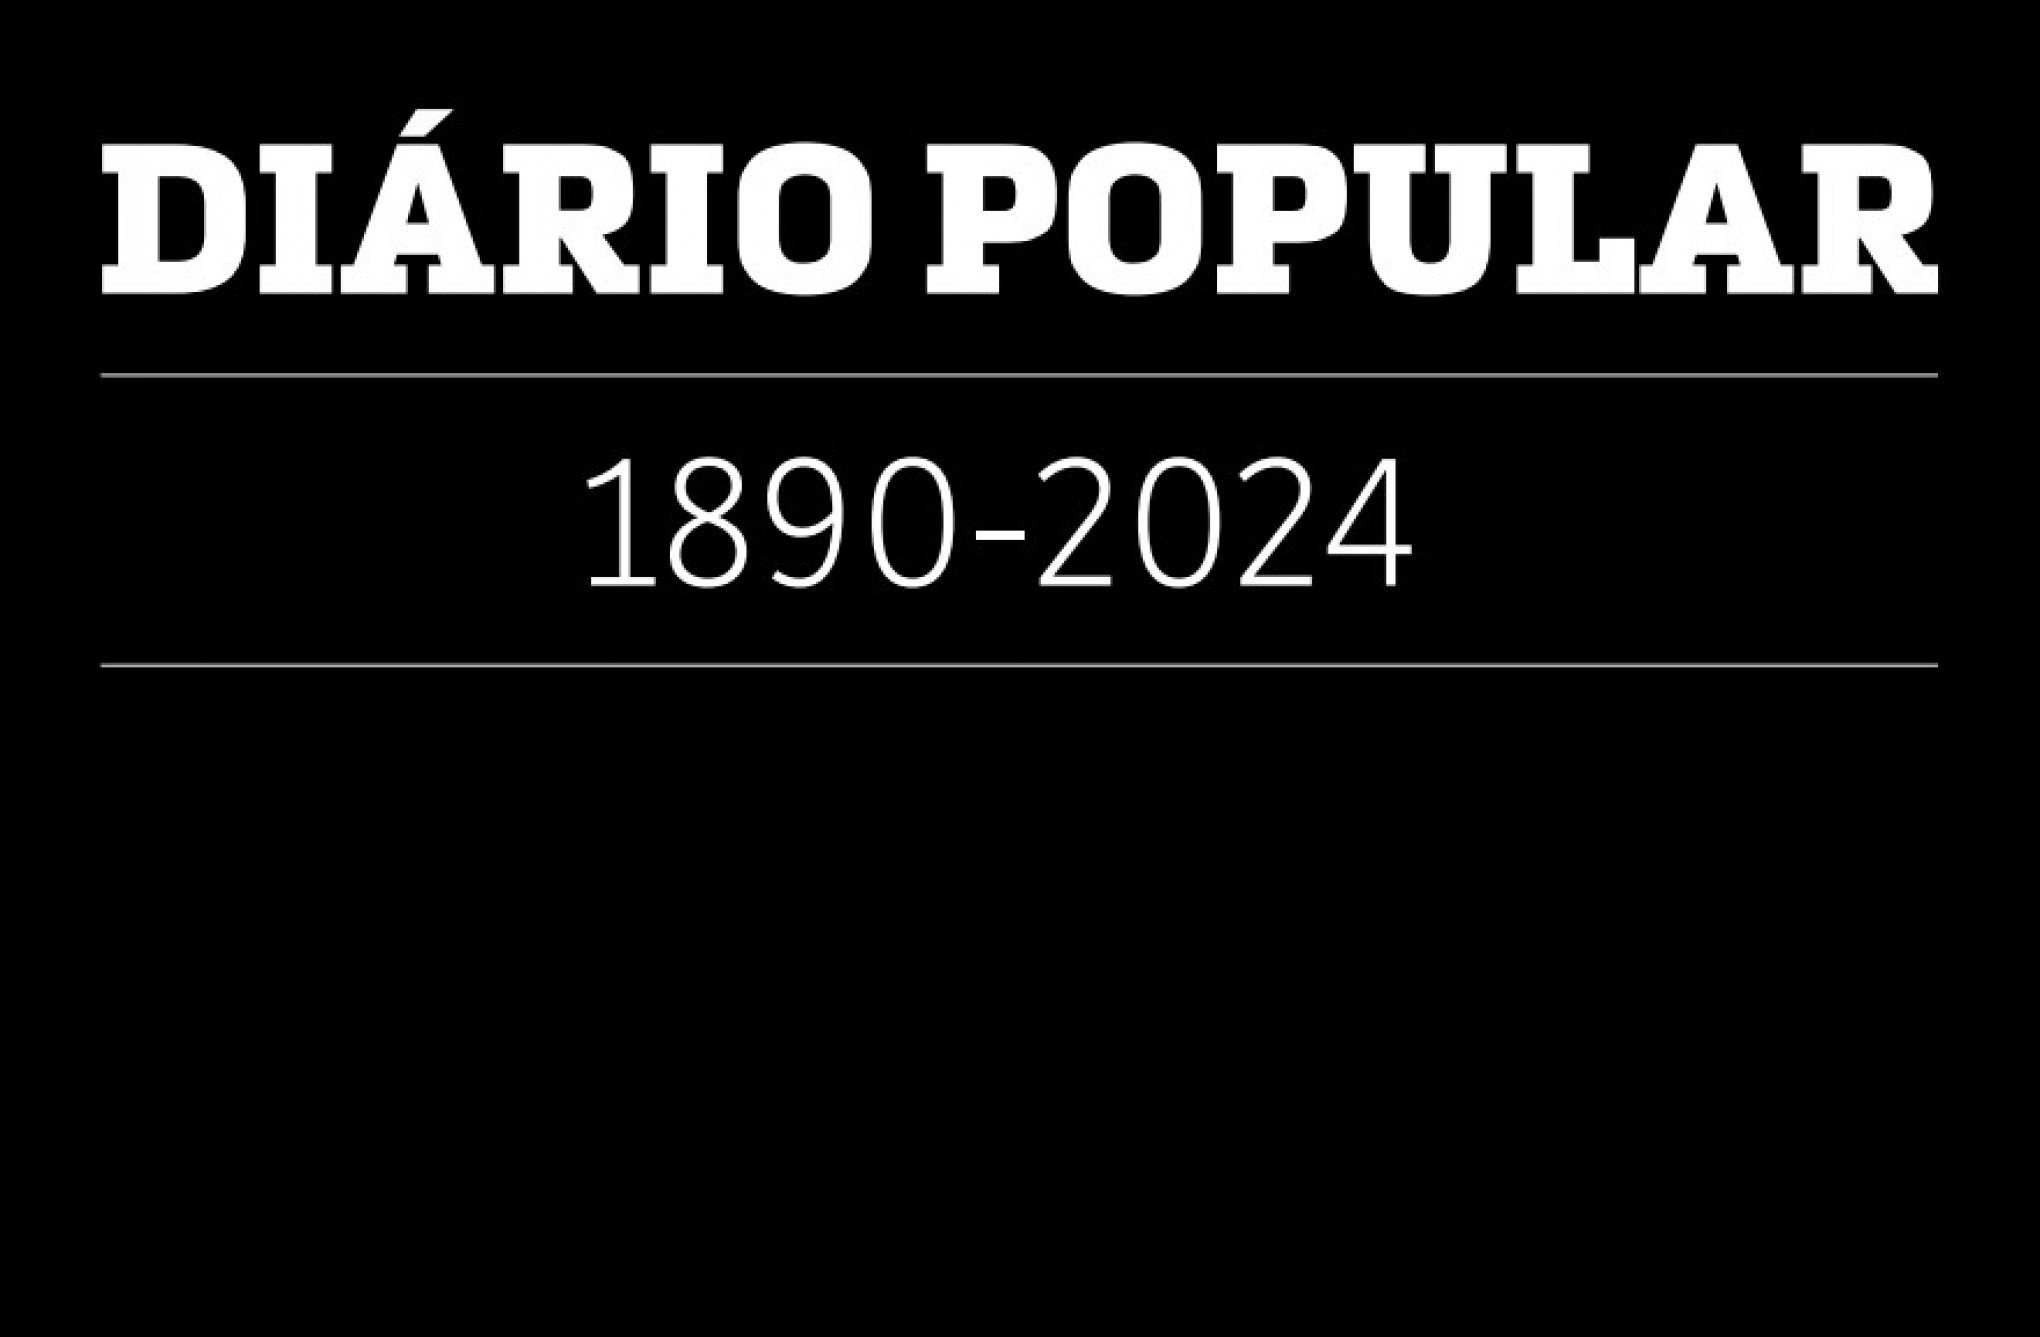 Fundado em 1890, jornal Diário Popular de Pelotas encerra as atividades